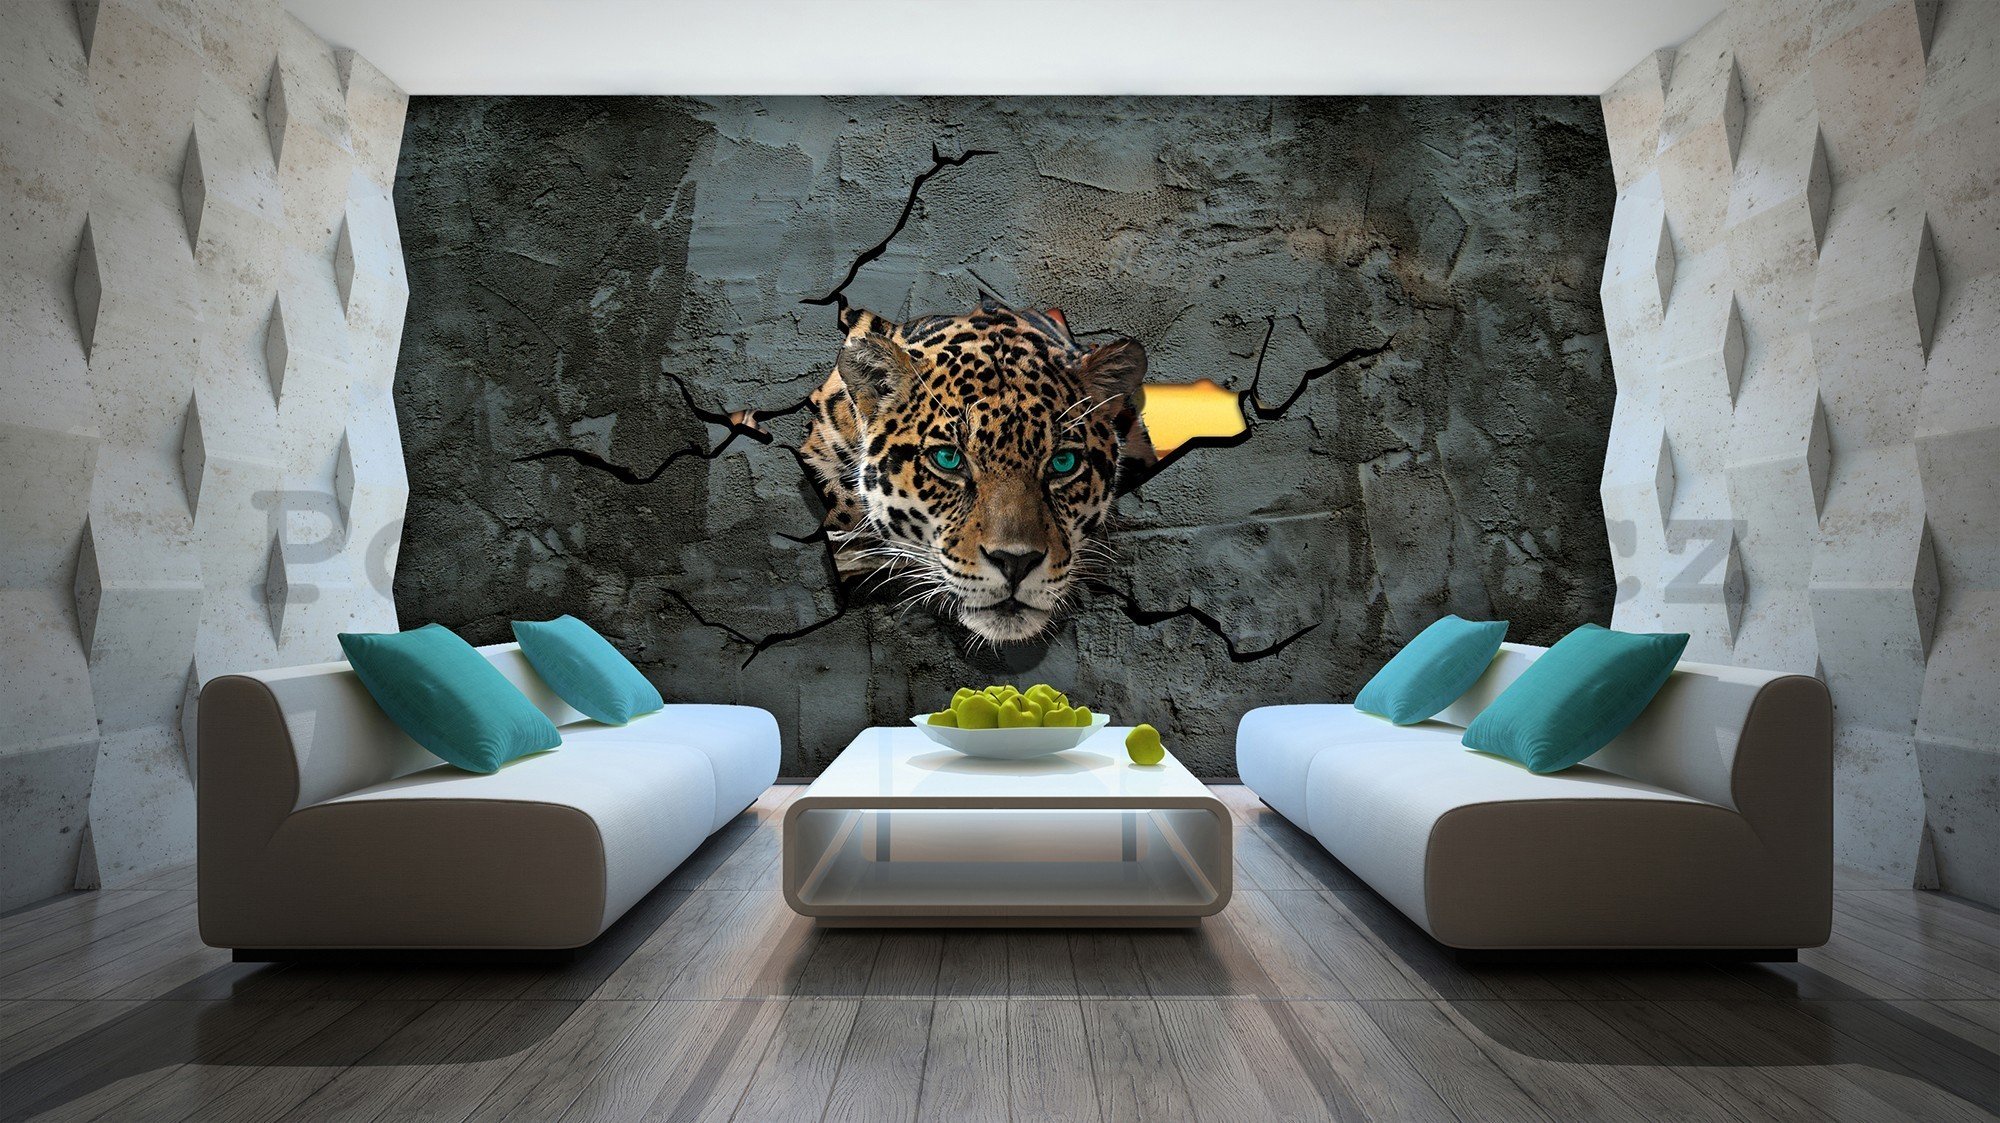 Fototapeta vliesová: Gepard ve zdi - 416x254 cm